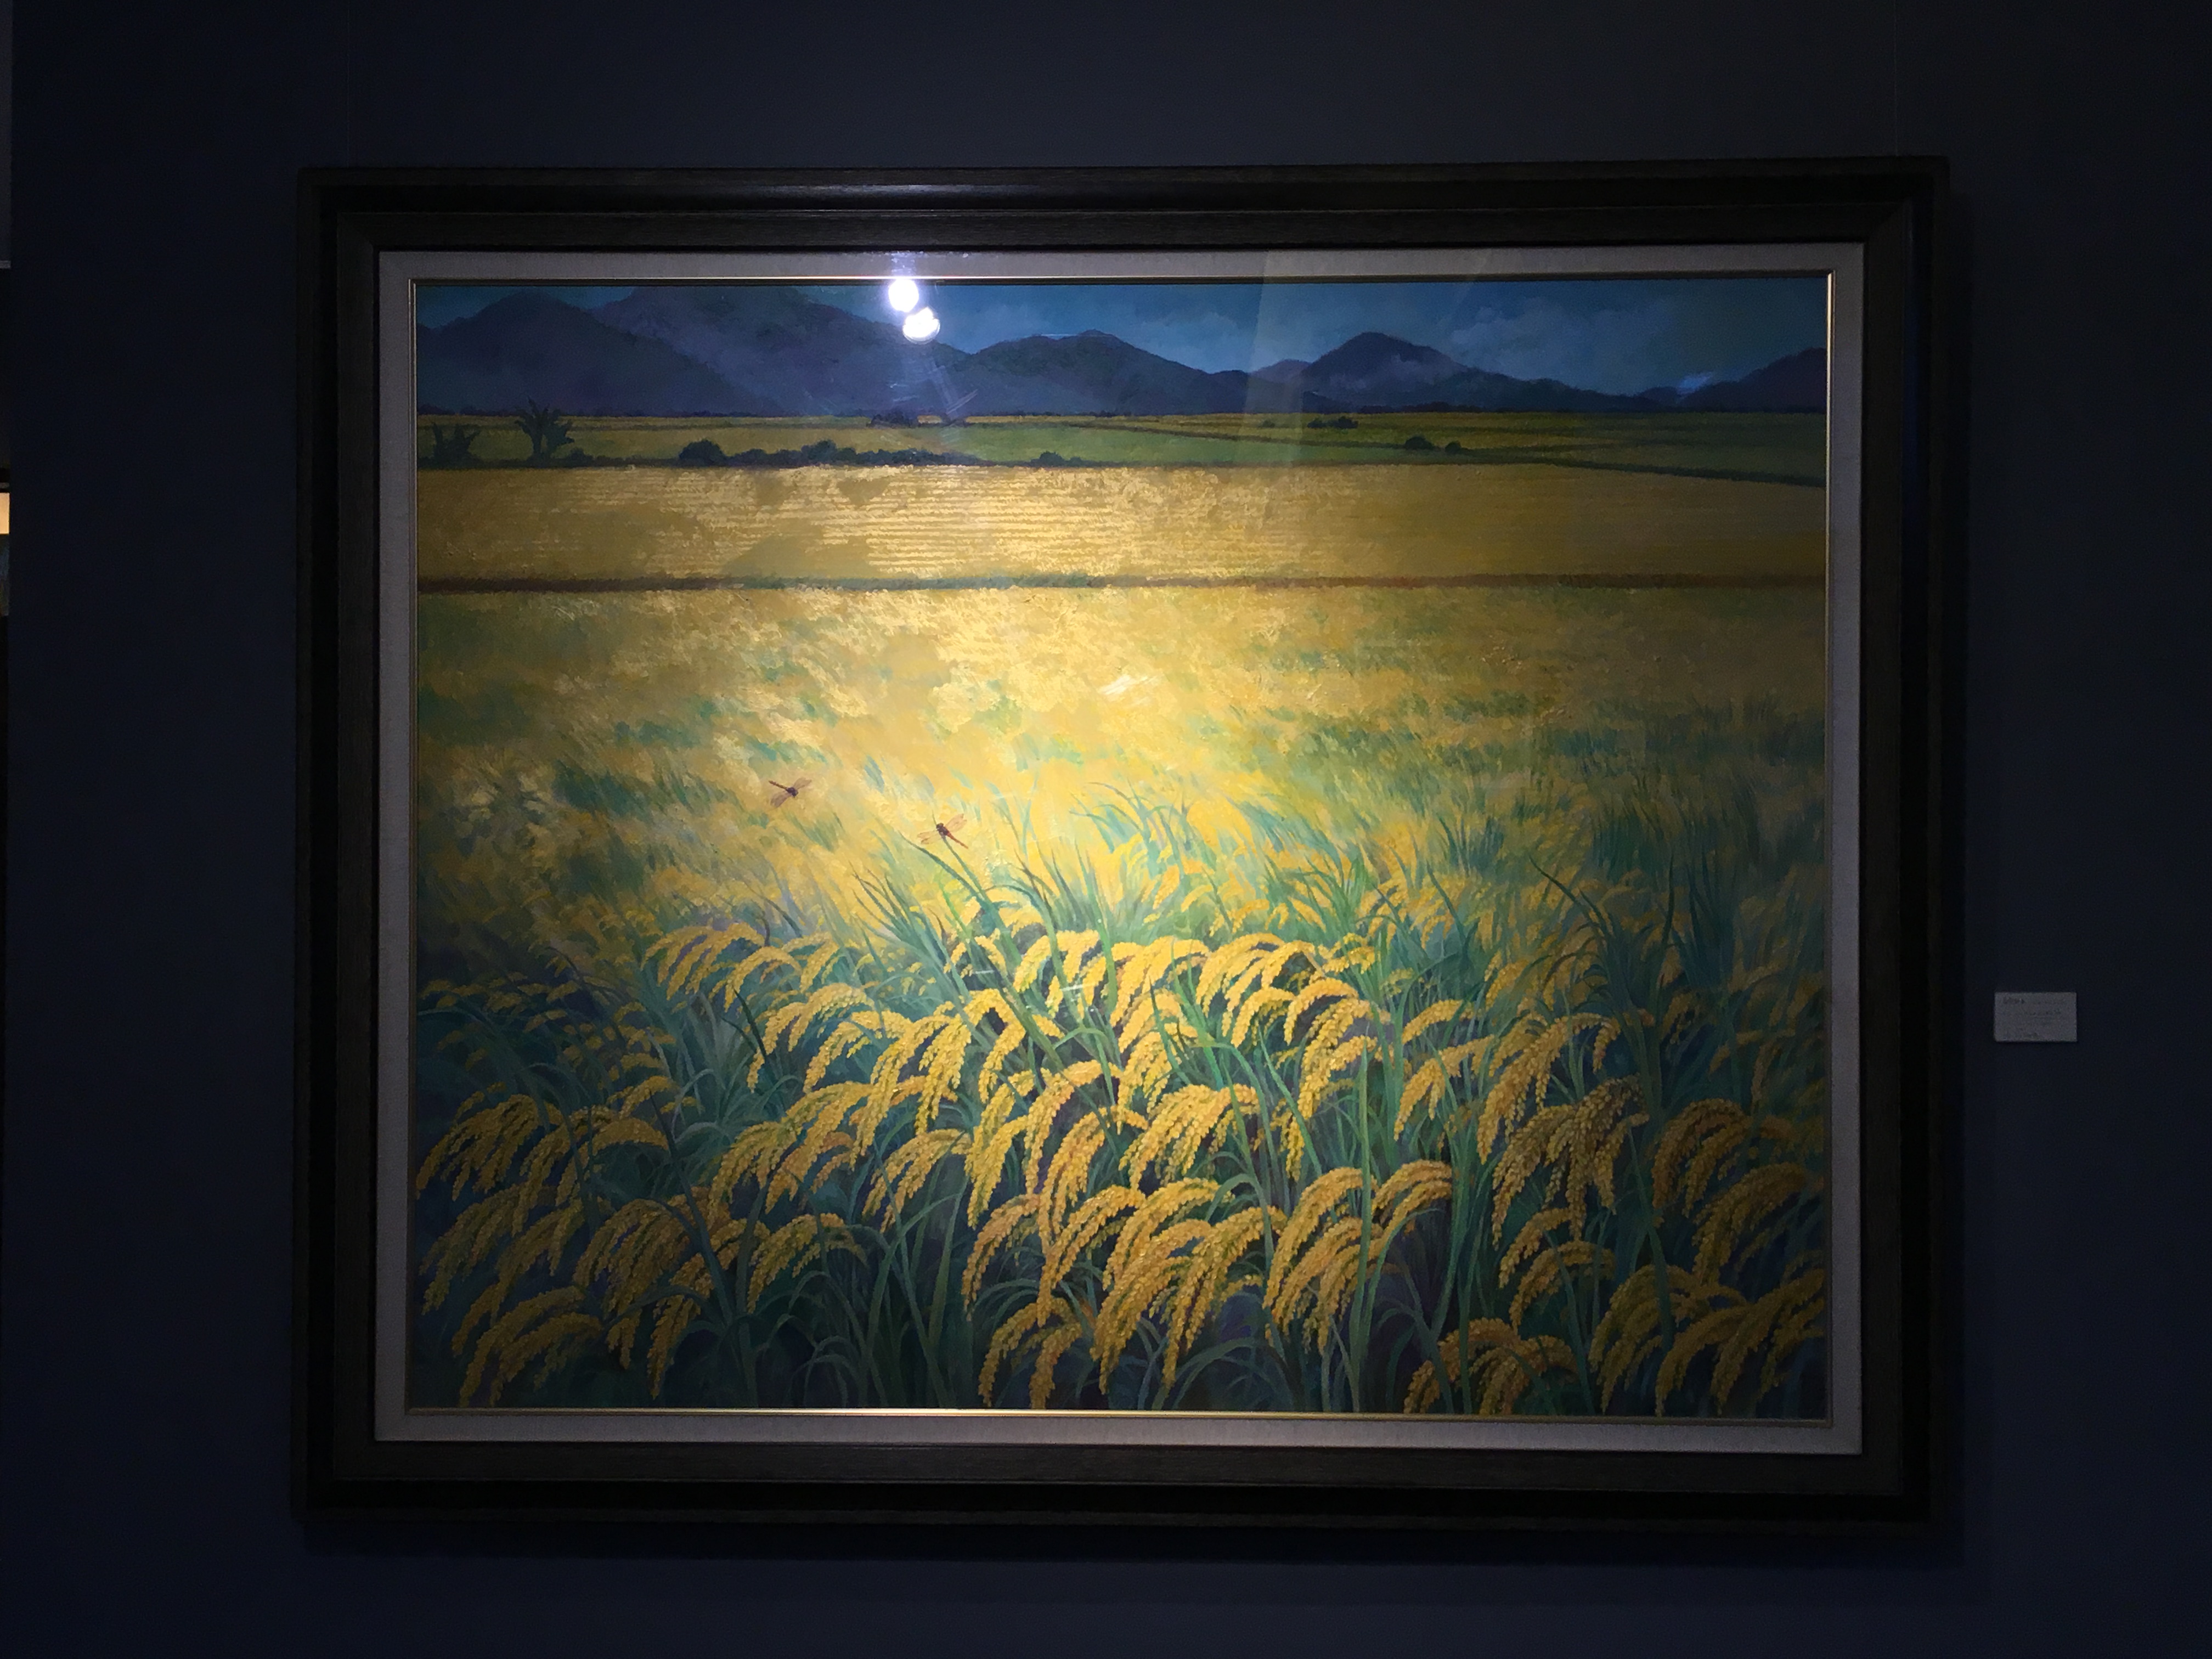 劉子平，《金色稻禾》，130 x 162 cm，油彩、壓克力、綜合媒材、畫布，2019。